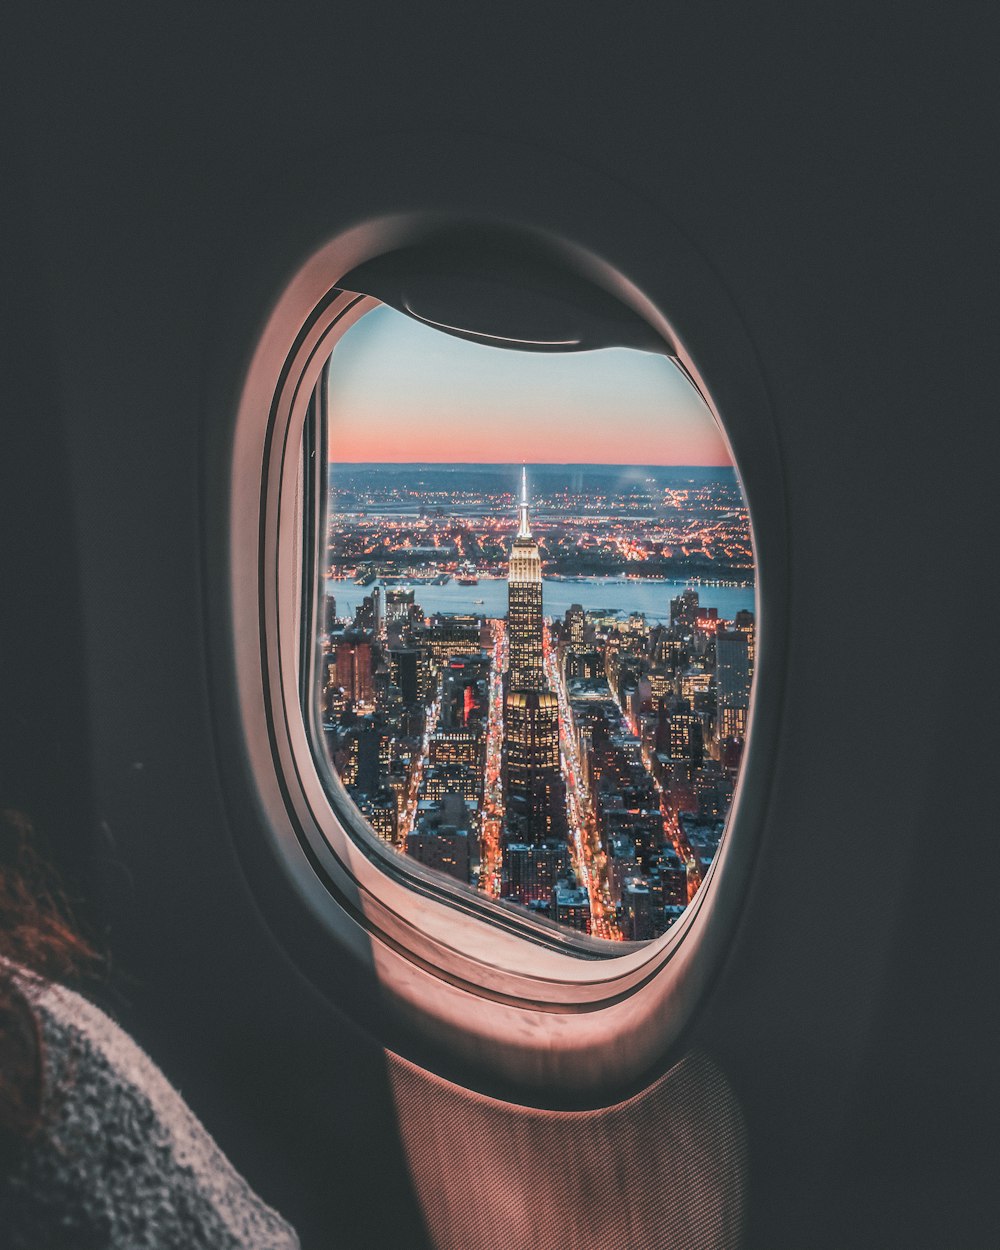 エンパイアステートビルの飛行機の窓の写真